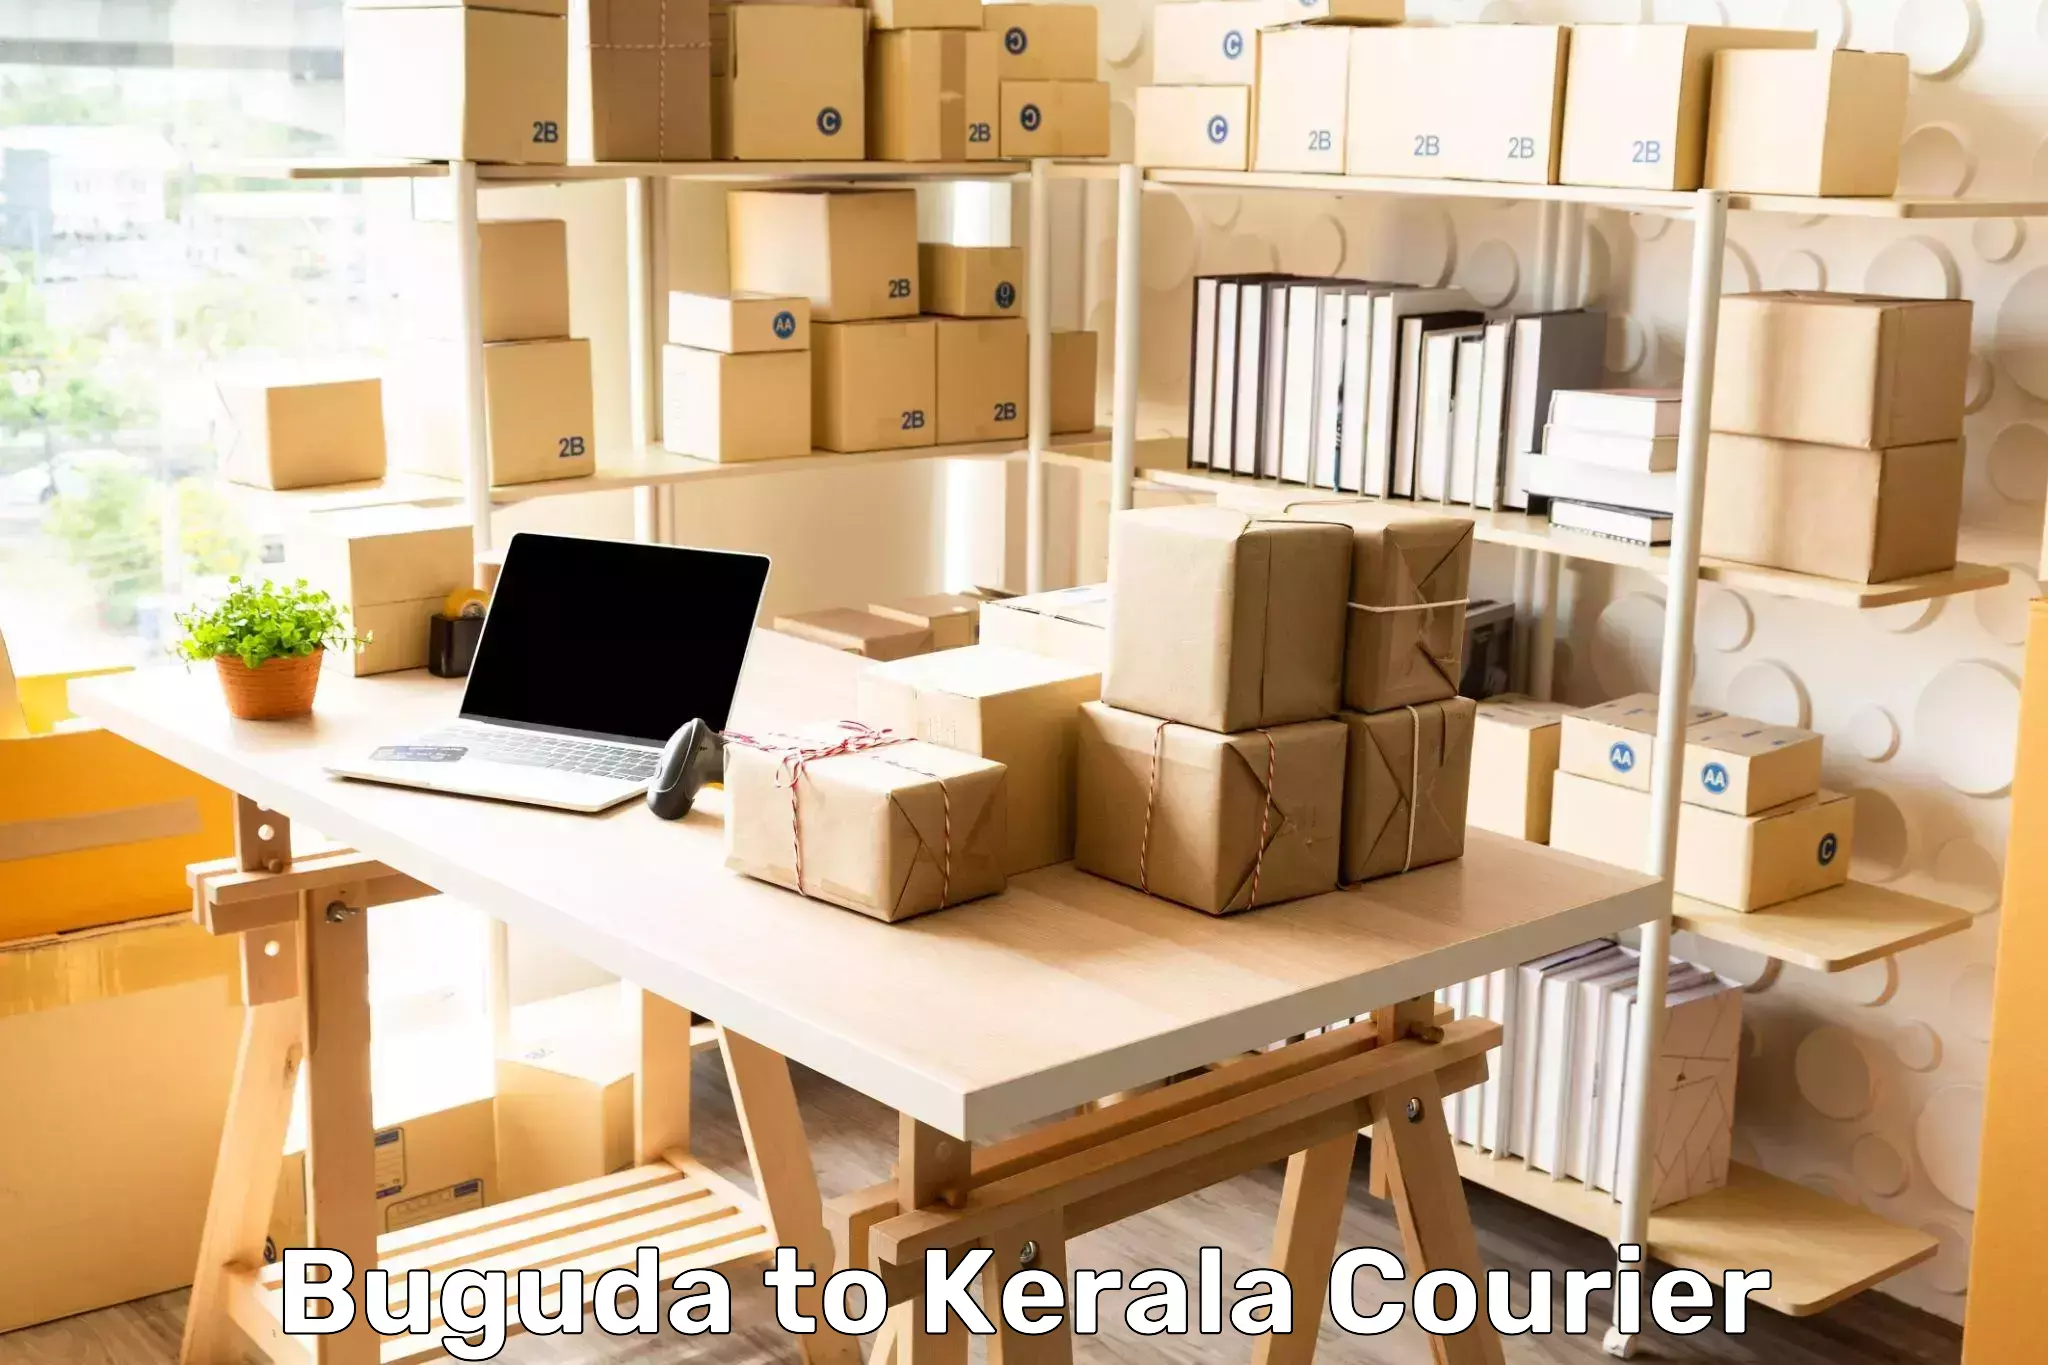 Logistics solutions Buguda to Kerala